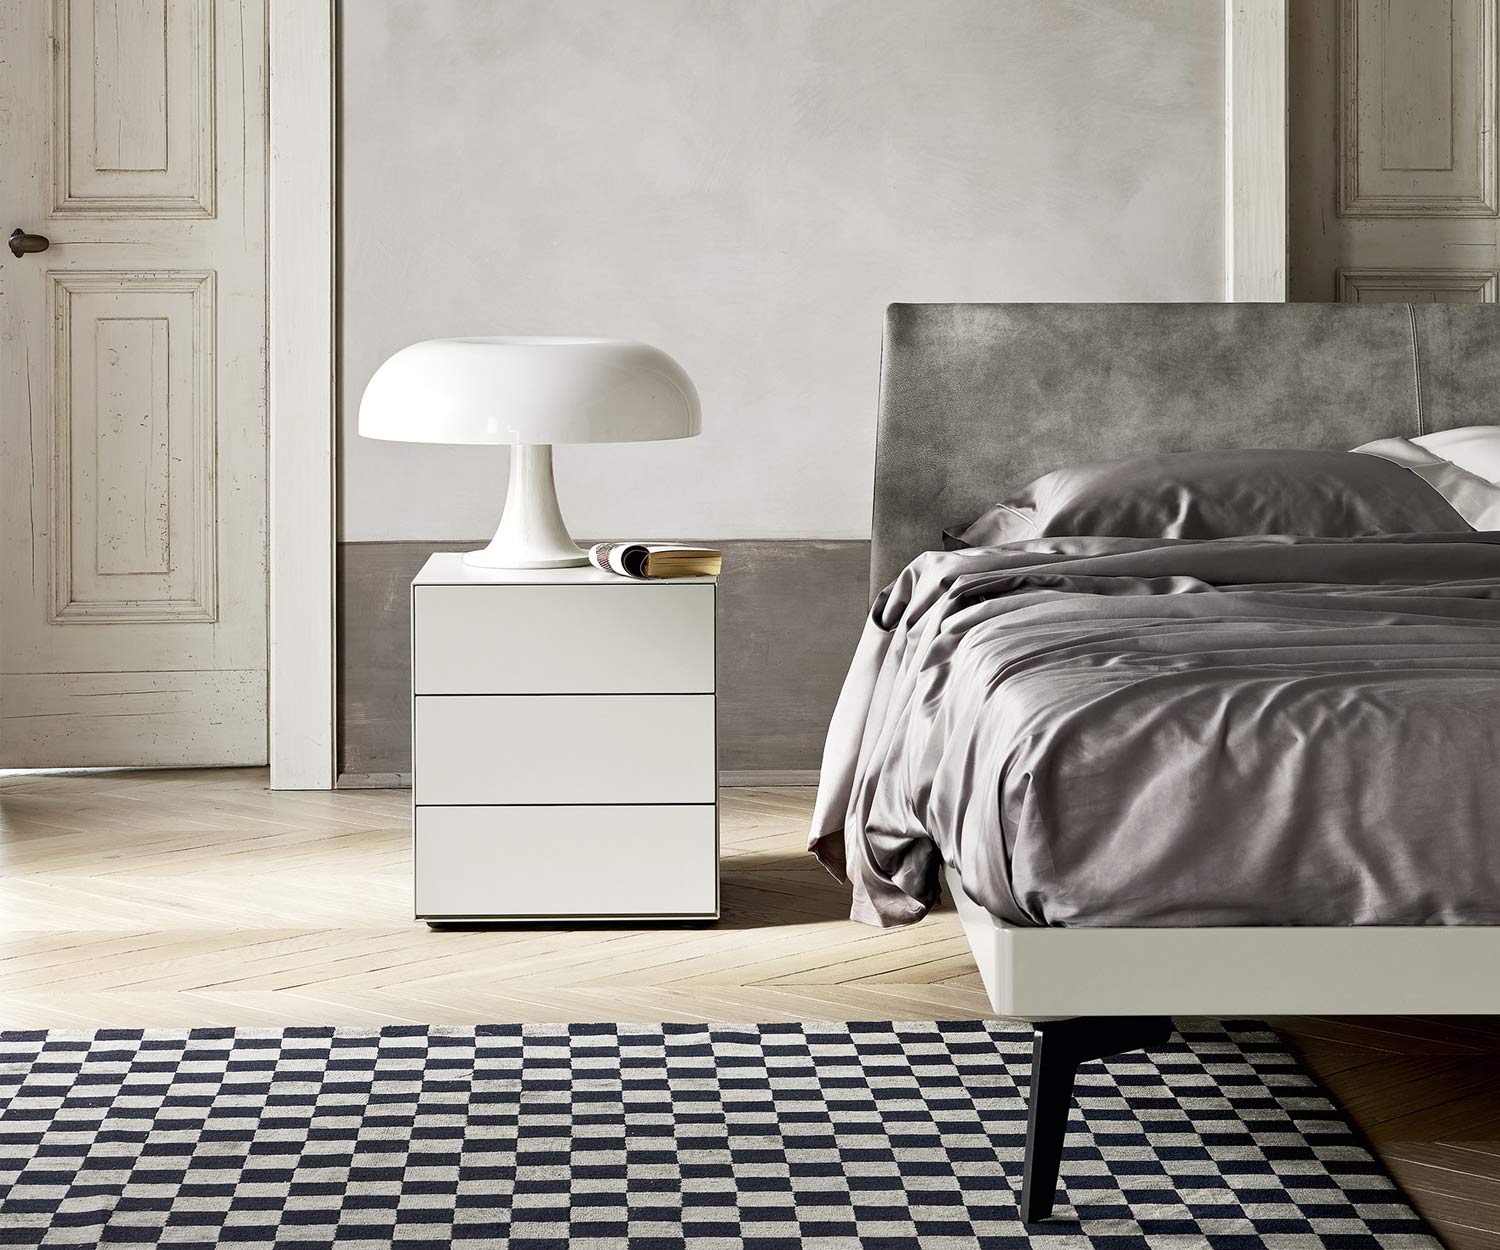 Table de nuit minimaliste Livitalia Design Ecletto avec trois tiroirs en blanc